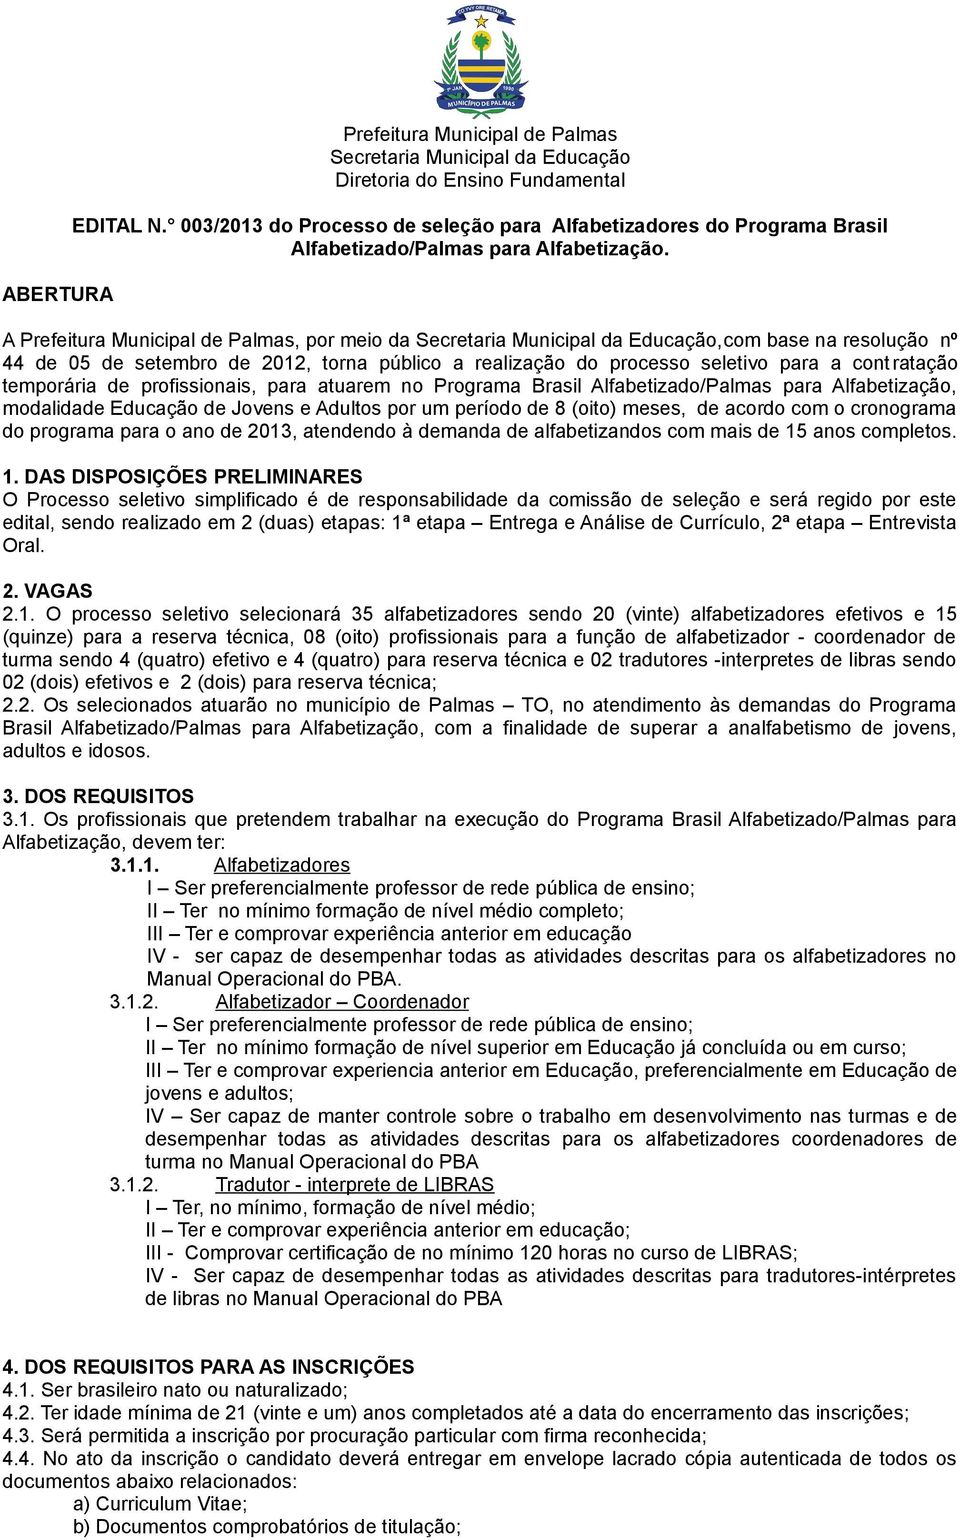 A Prefeitura Municipal de Palmas, por meio da Secretaria Municipal da Educação,com base na resolução nº 44 de 05 de setembro de 2012, torna público a realização do processo seletivo para a cont